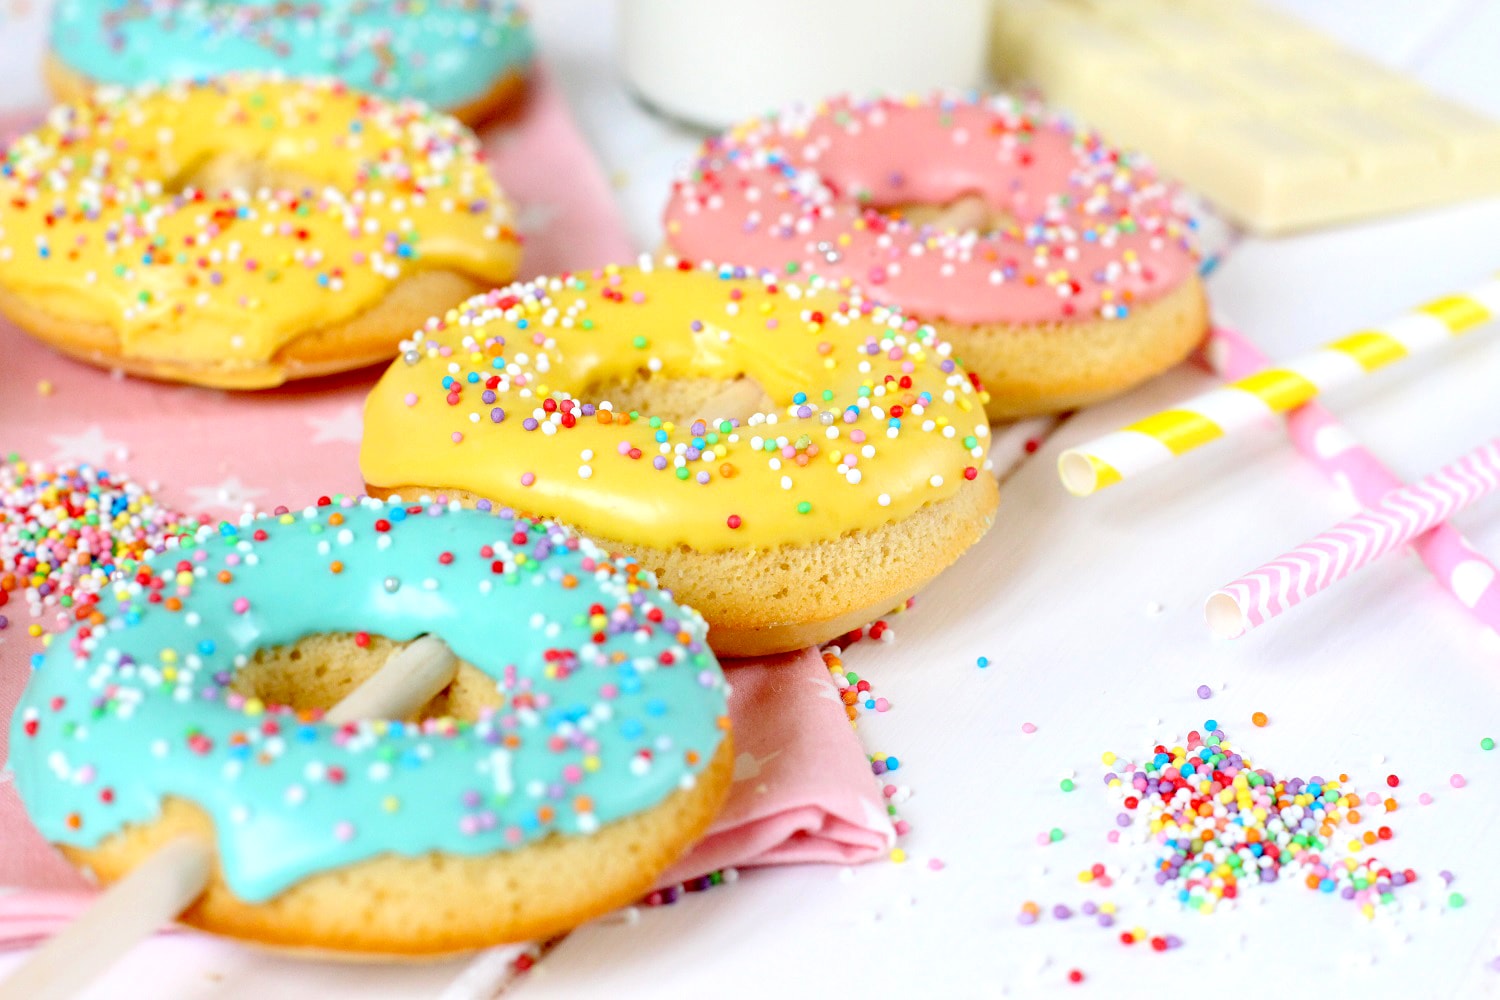 Receta de como hacer donuts en paletas - Foto de la receta de donuts al horno